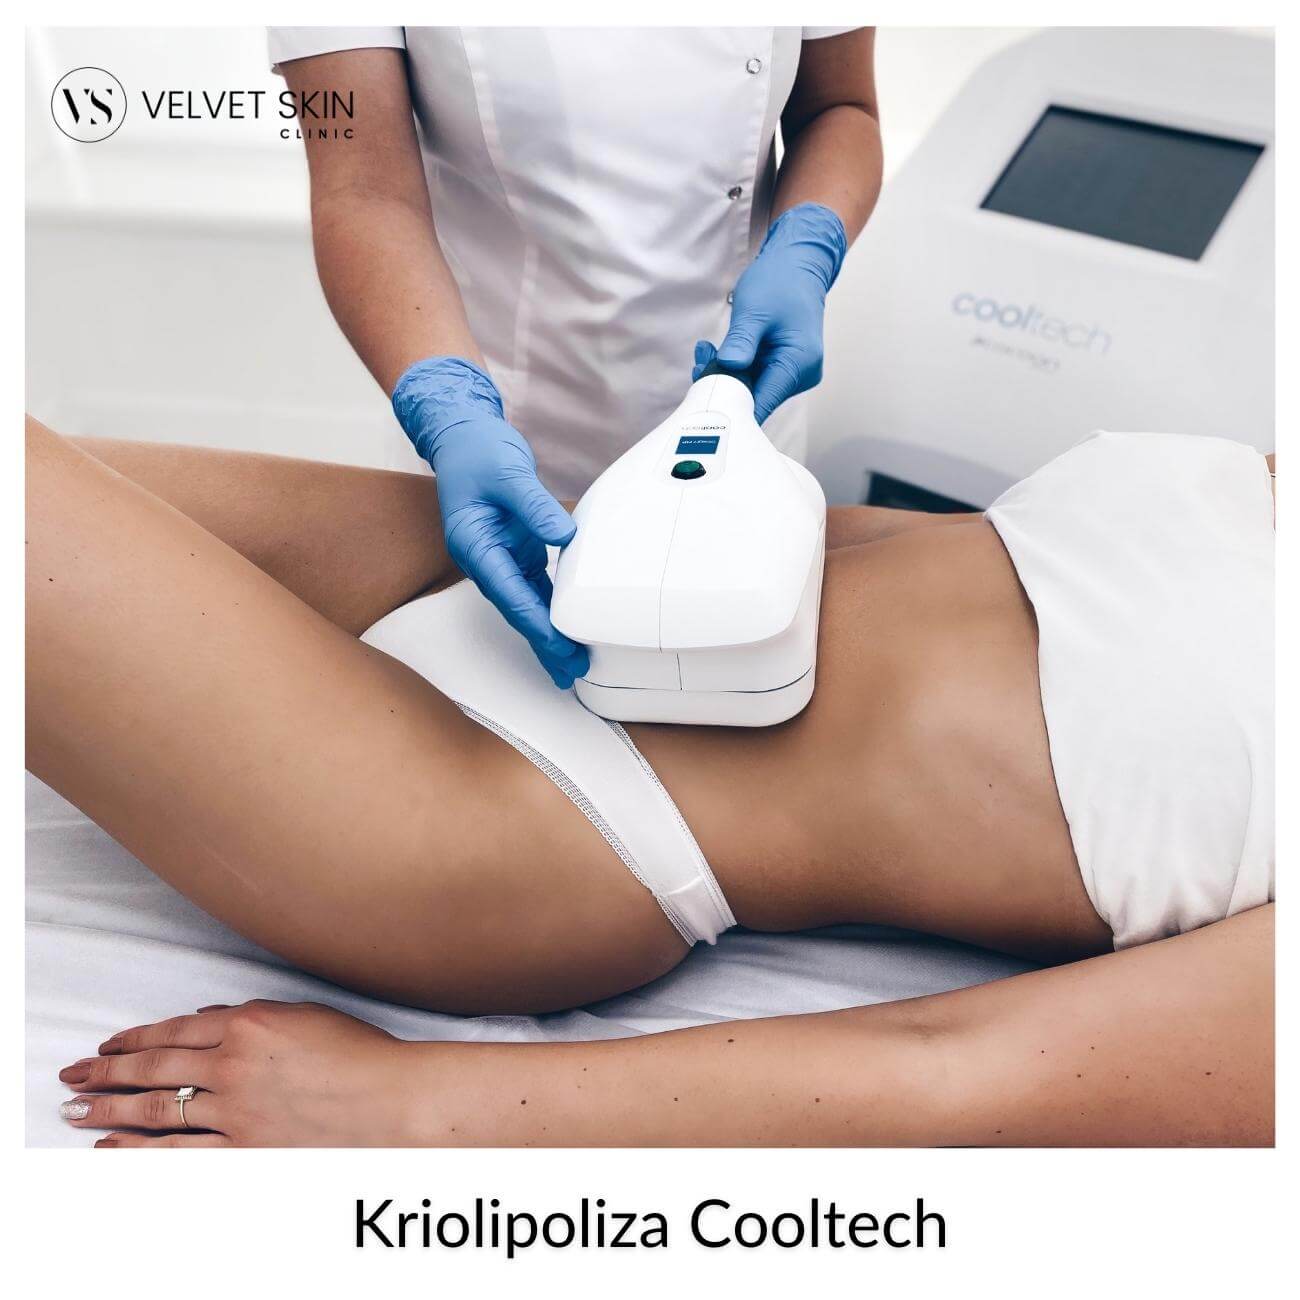 Kriolipoliza Cooltech - zabieg wykonywany na brzuch przez kosmetolog